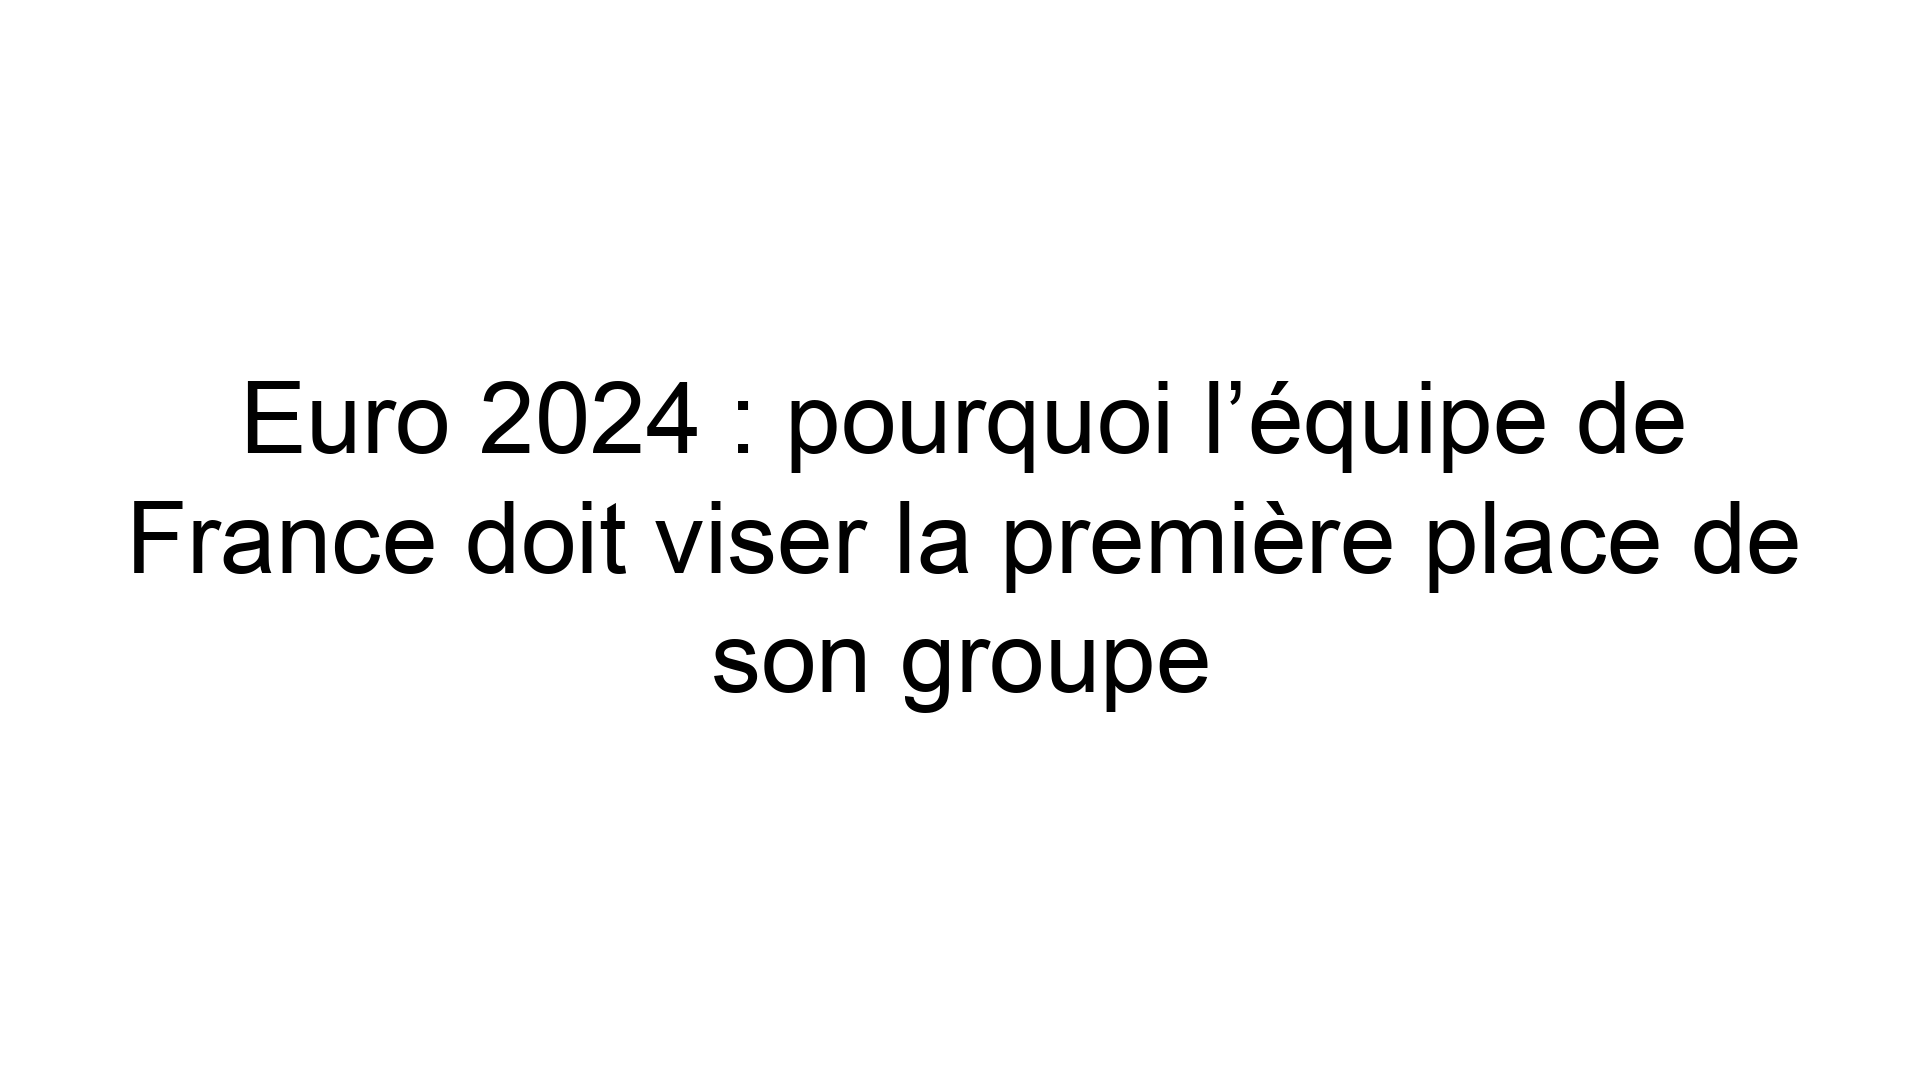 Euro 2024 pourquoi l’équipe de France doit viser la première place de